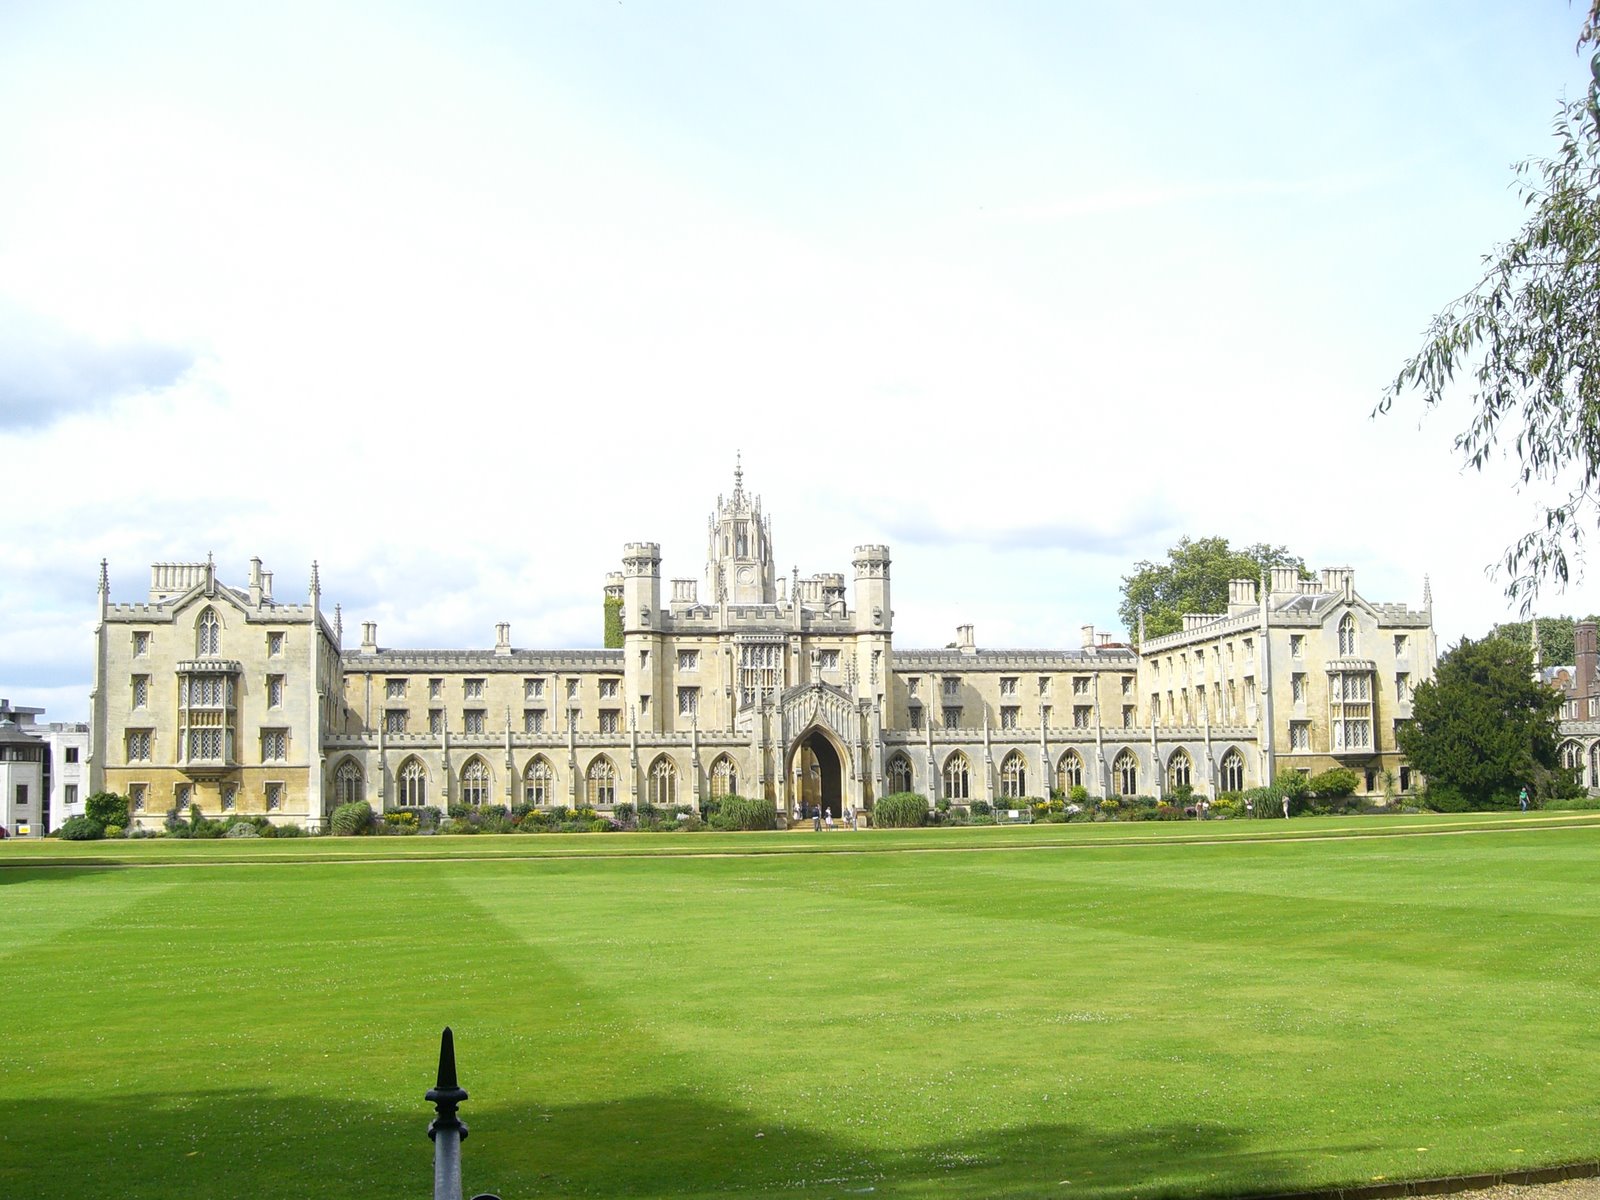 University Cambridge